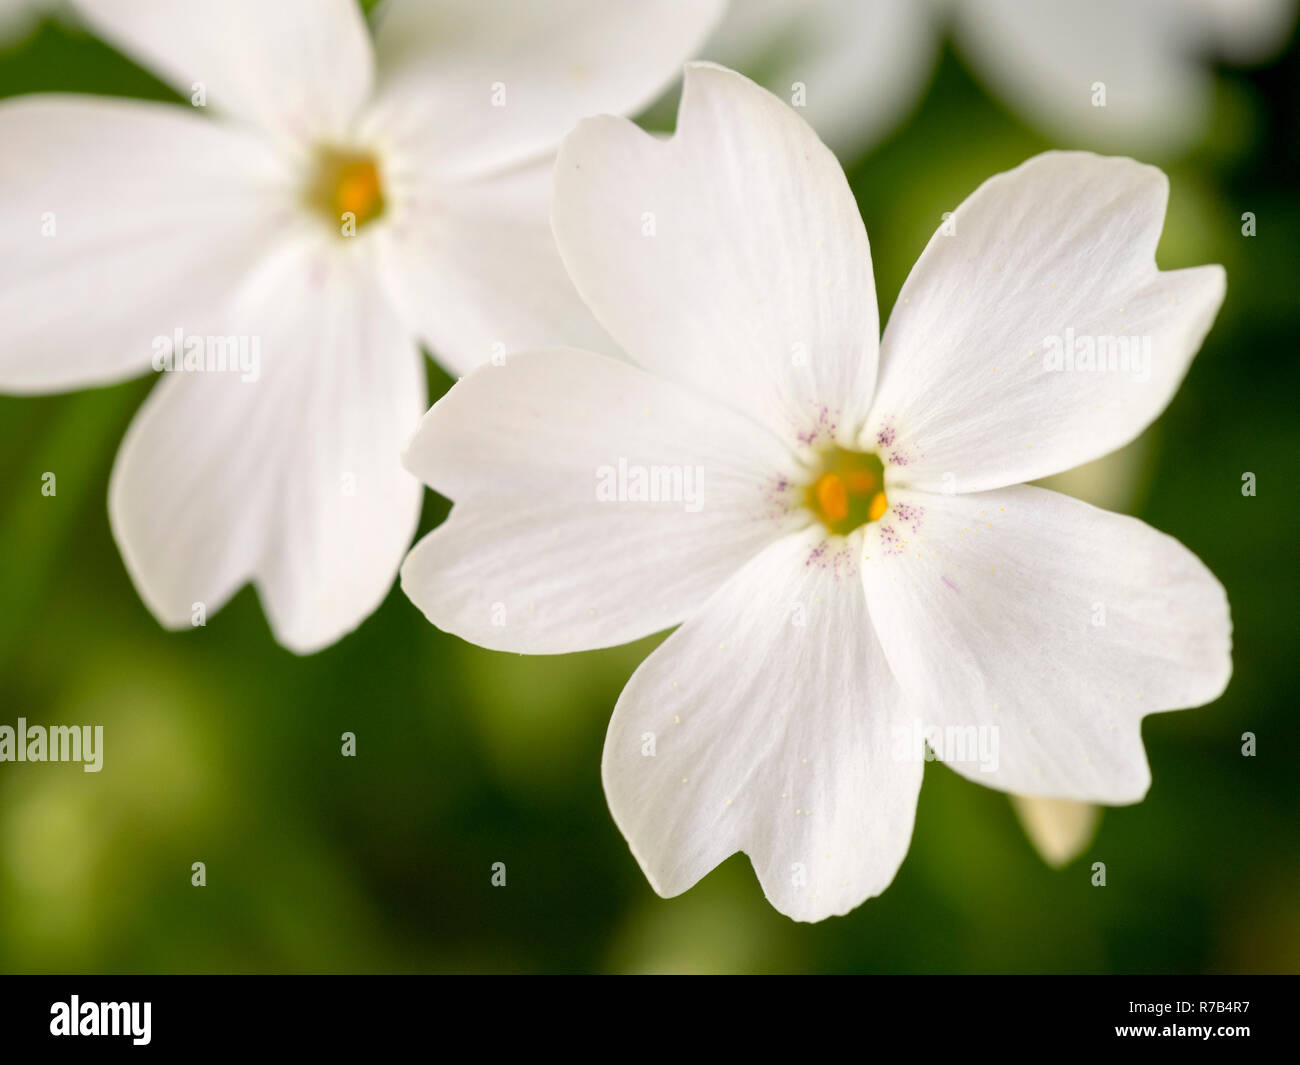 Macro shot of white phlox flowers Stock Photo